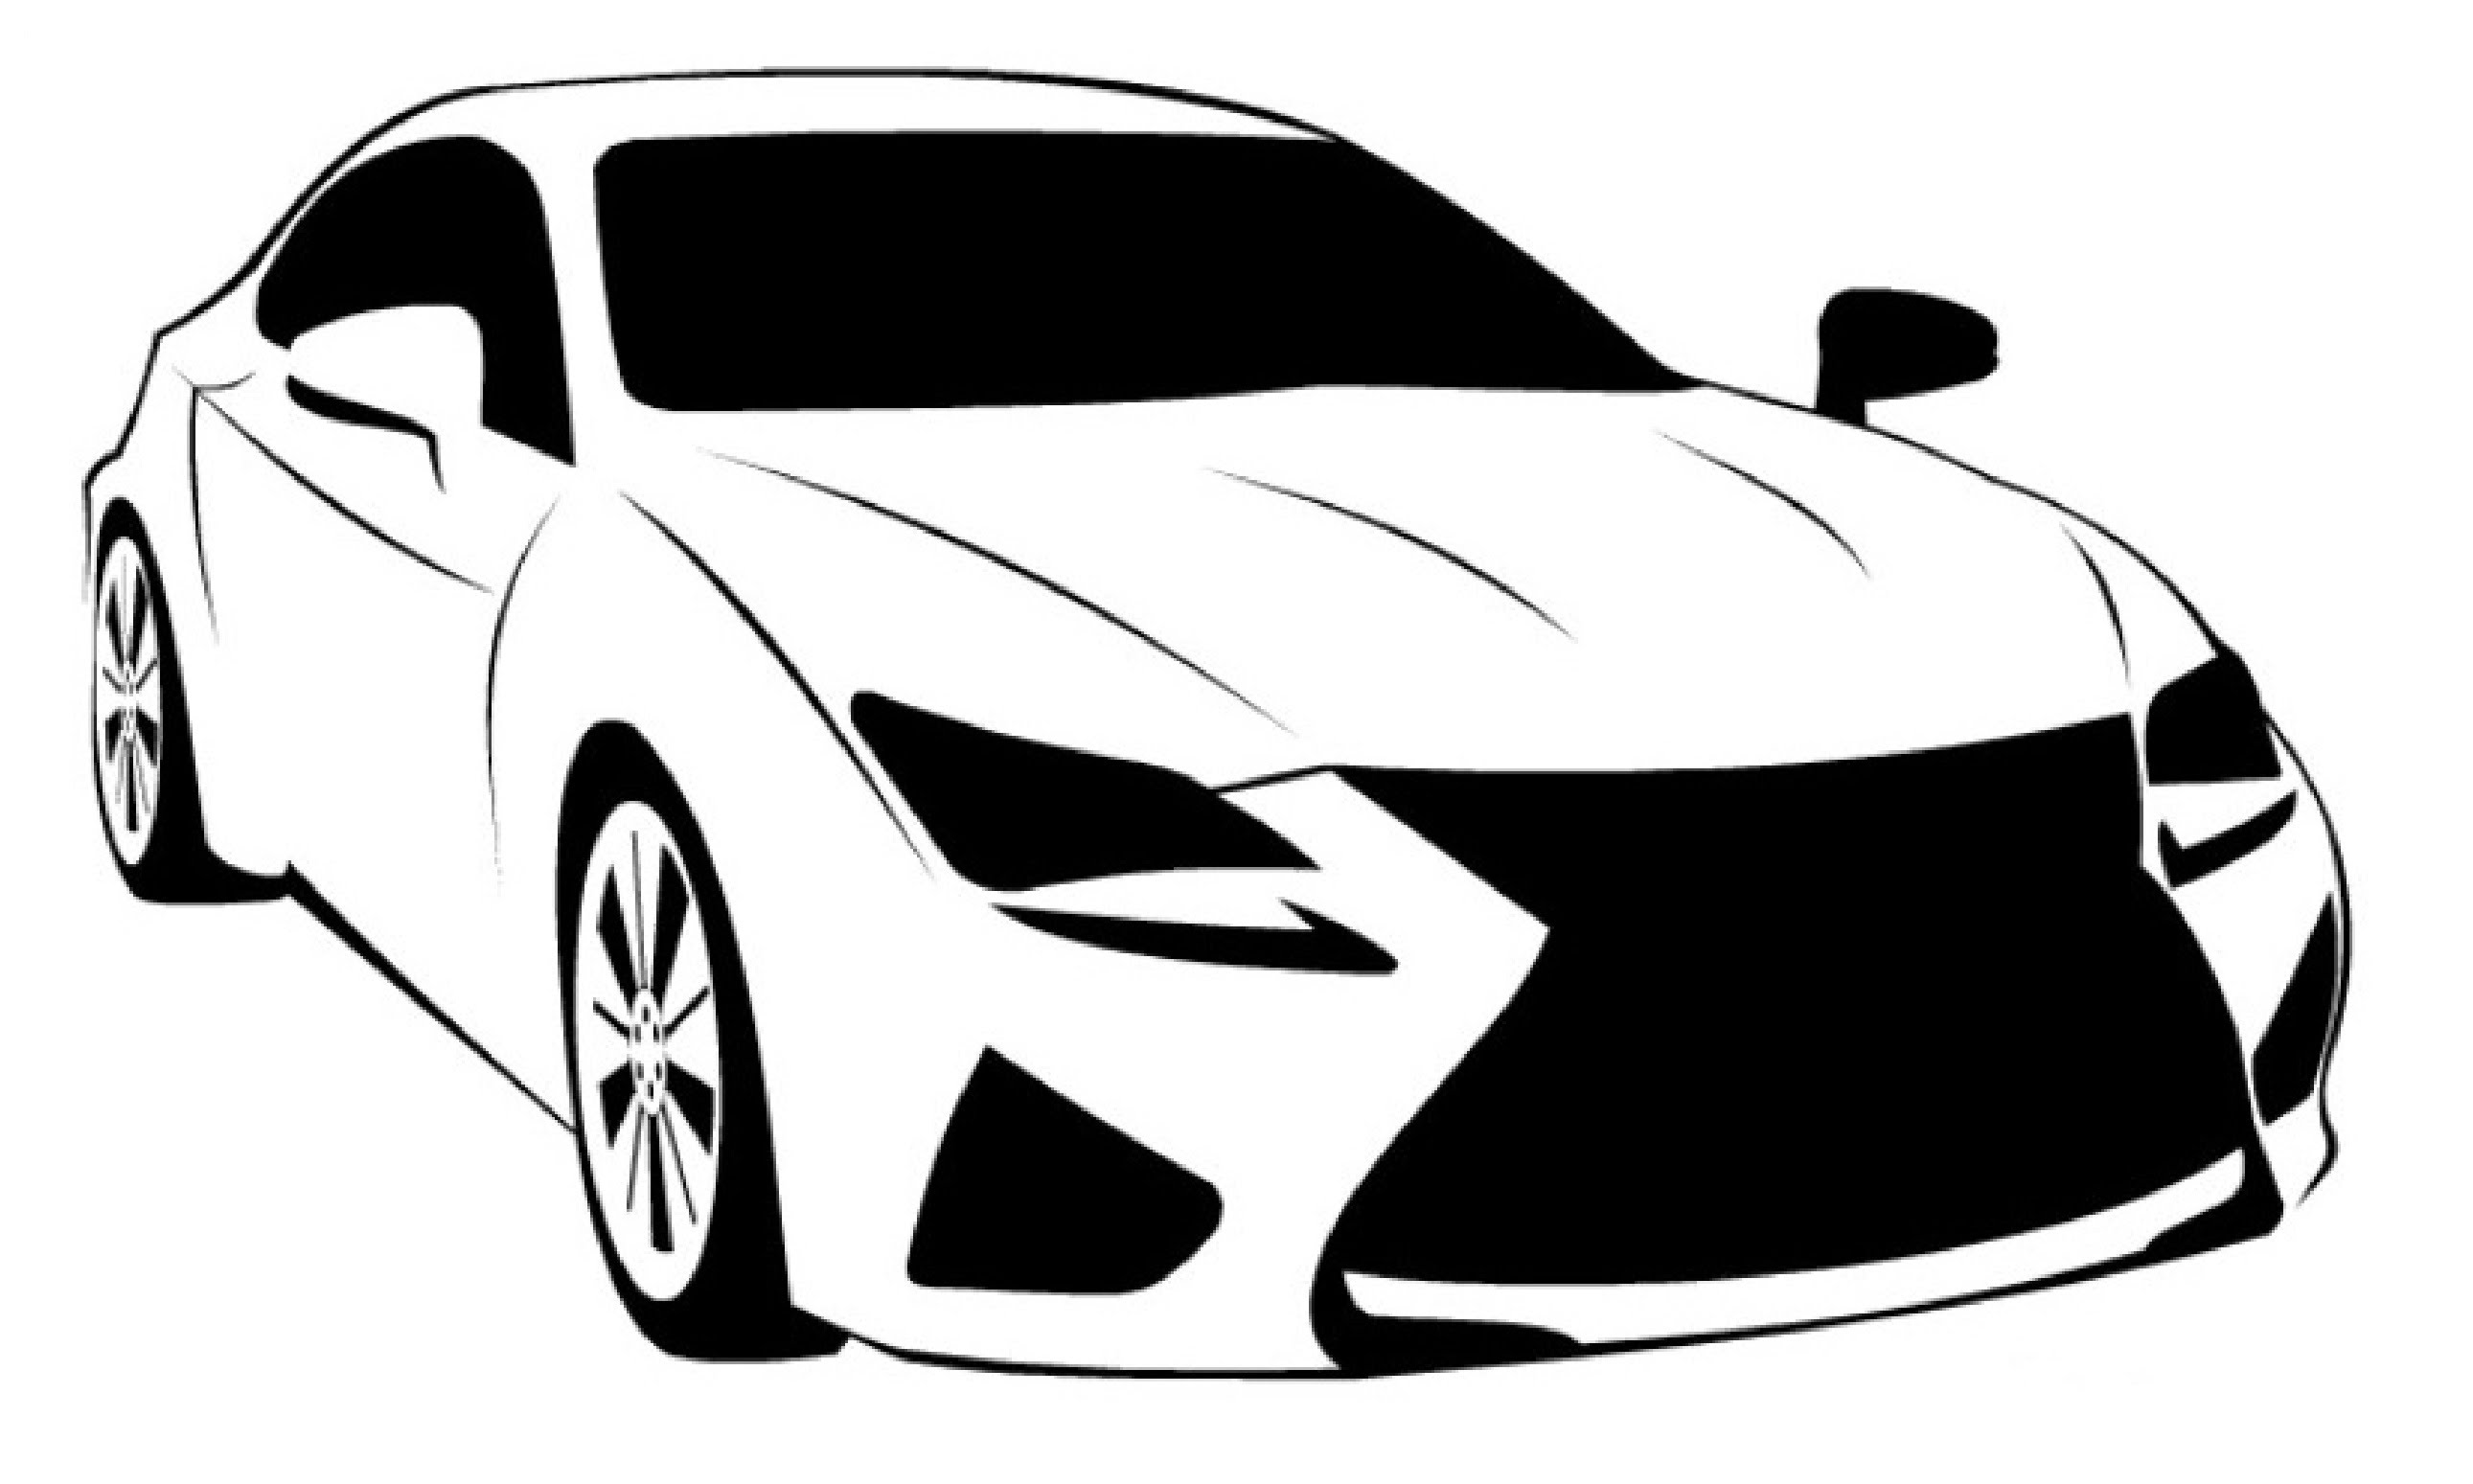 How to Draw a Lexus RC F / Ð?Ð°Ðº Ð½Ð°Ñ?Ð¸ÑÐ¾Ð²Ð°Ñ?Ñ? Lexus RC F - YouTube